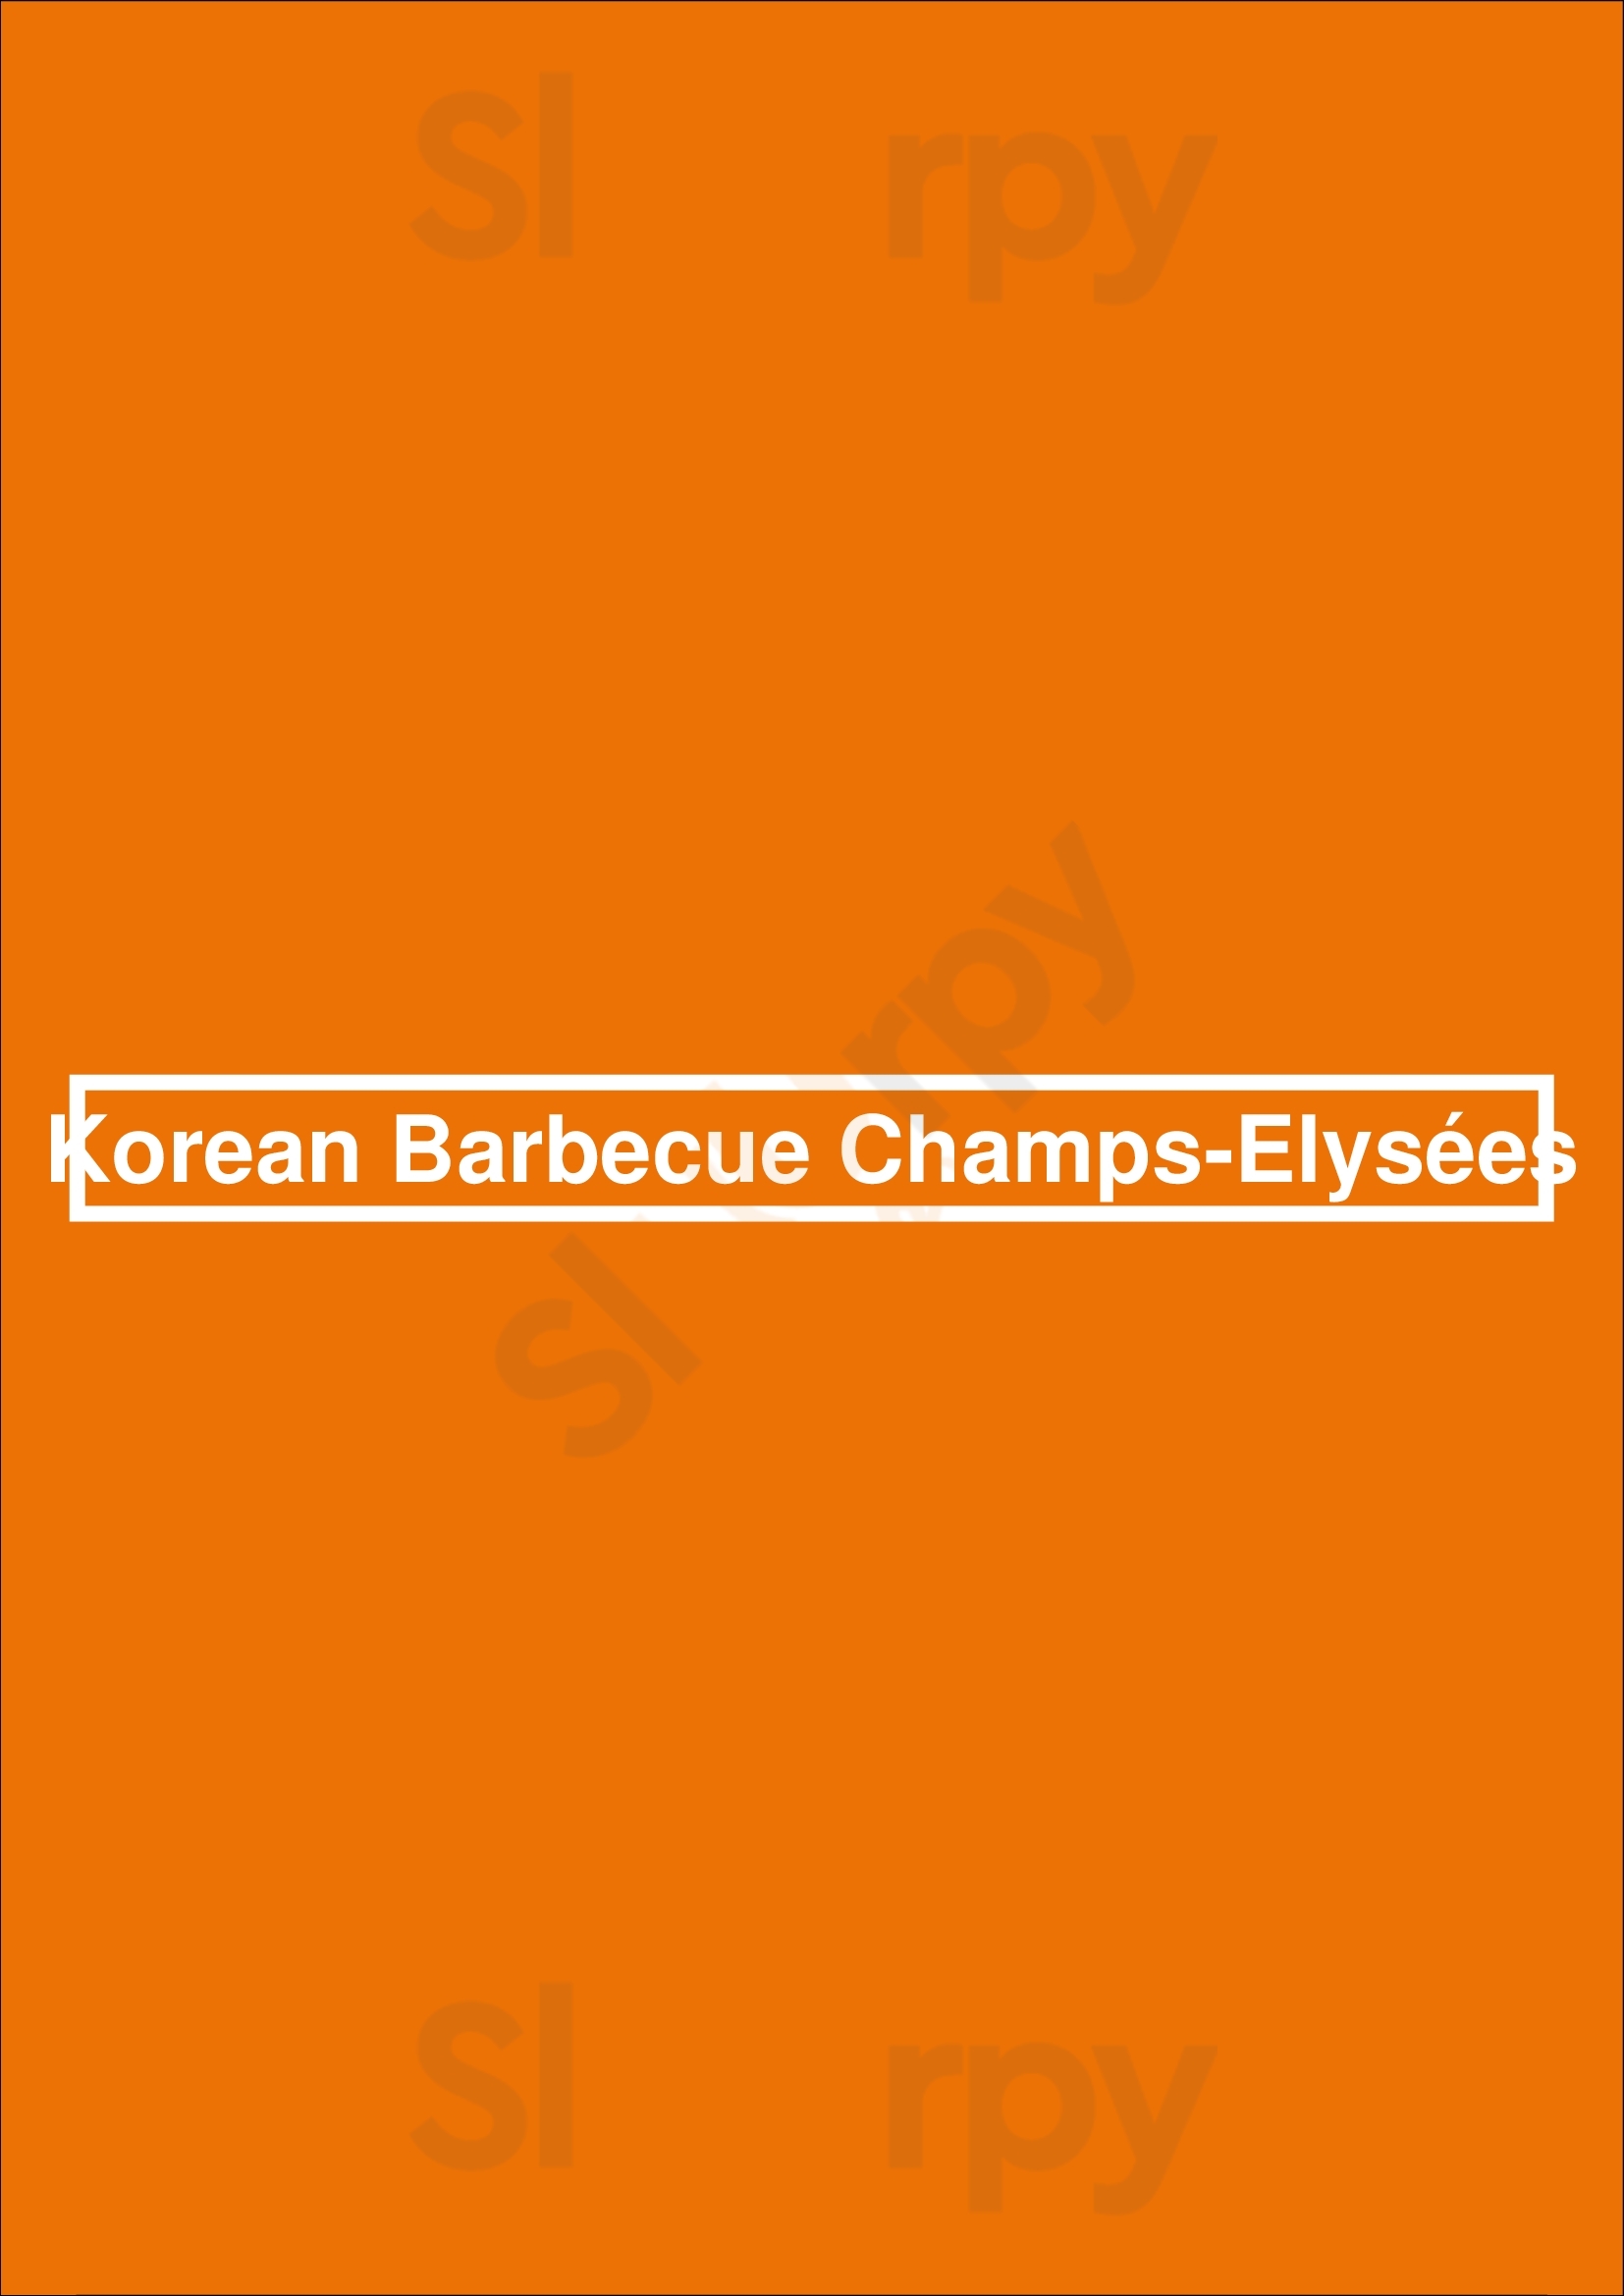 Korean Barbecue Champs-elysées Paris Menu - 1